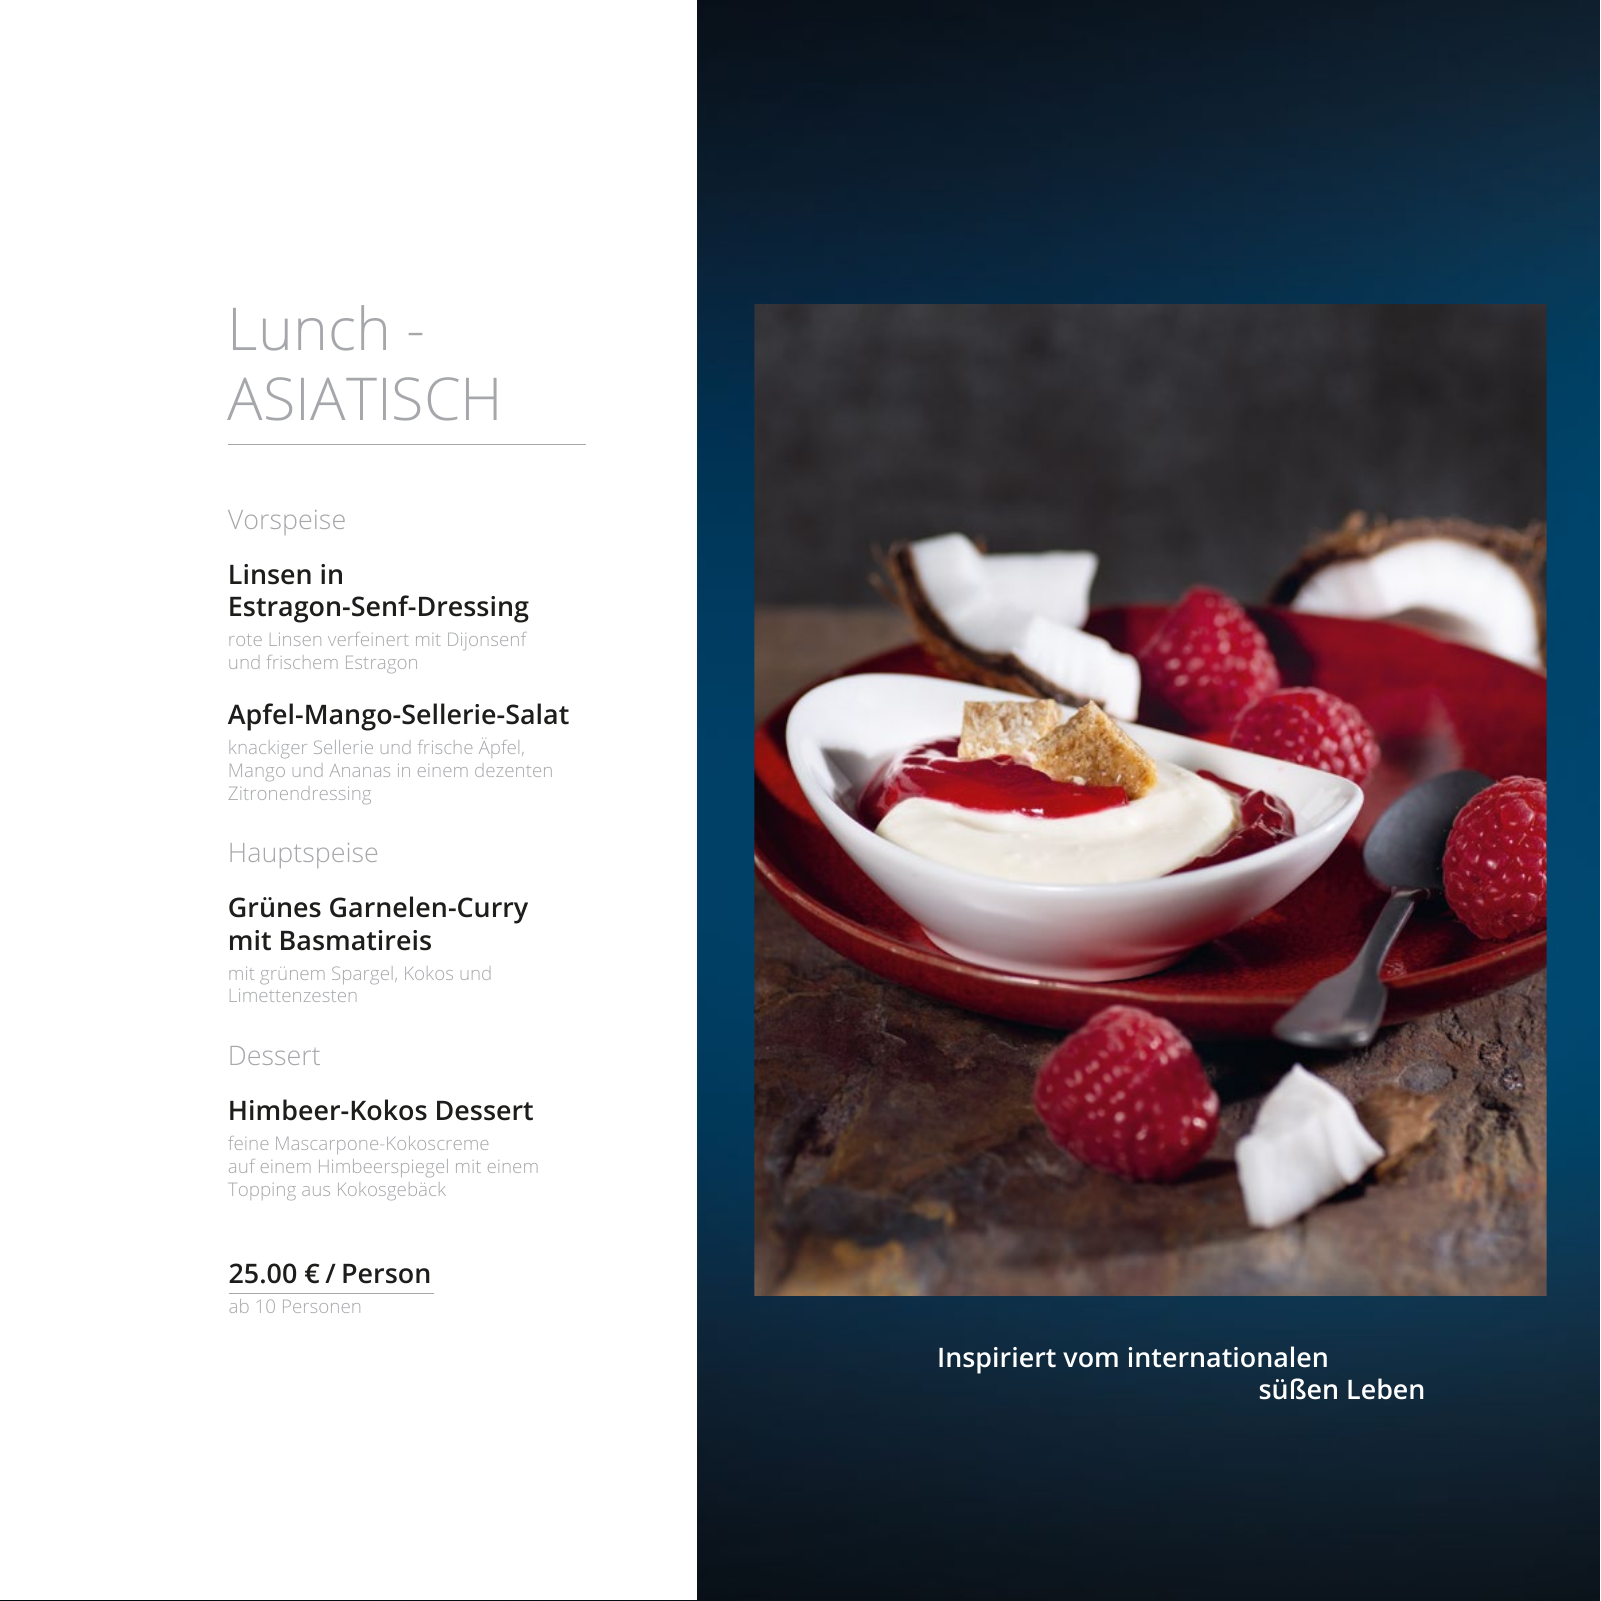 Vorschau Catering Katalog - Businesskunden 2020 Seite 21